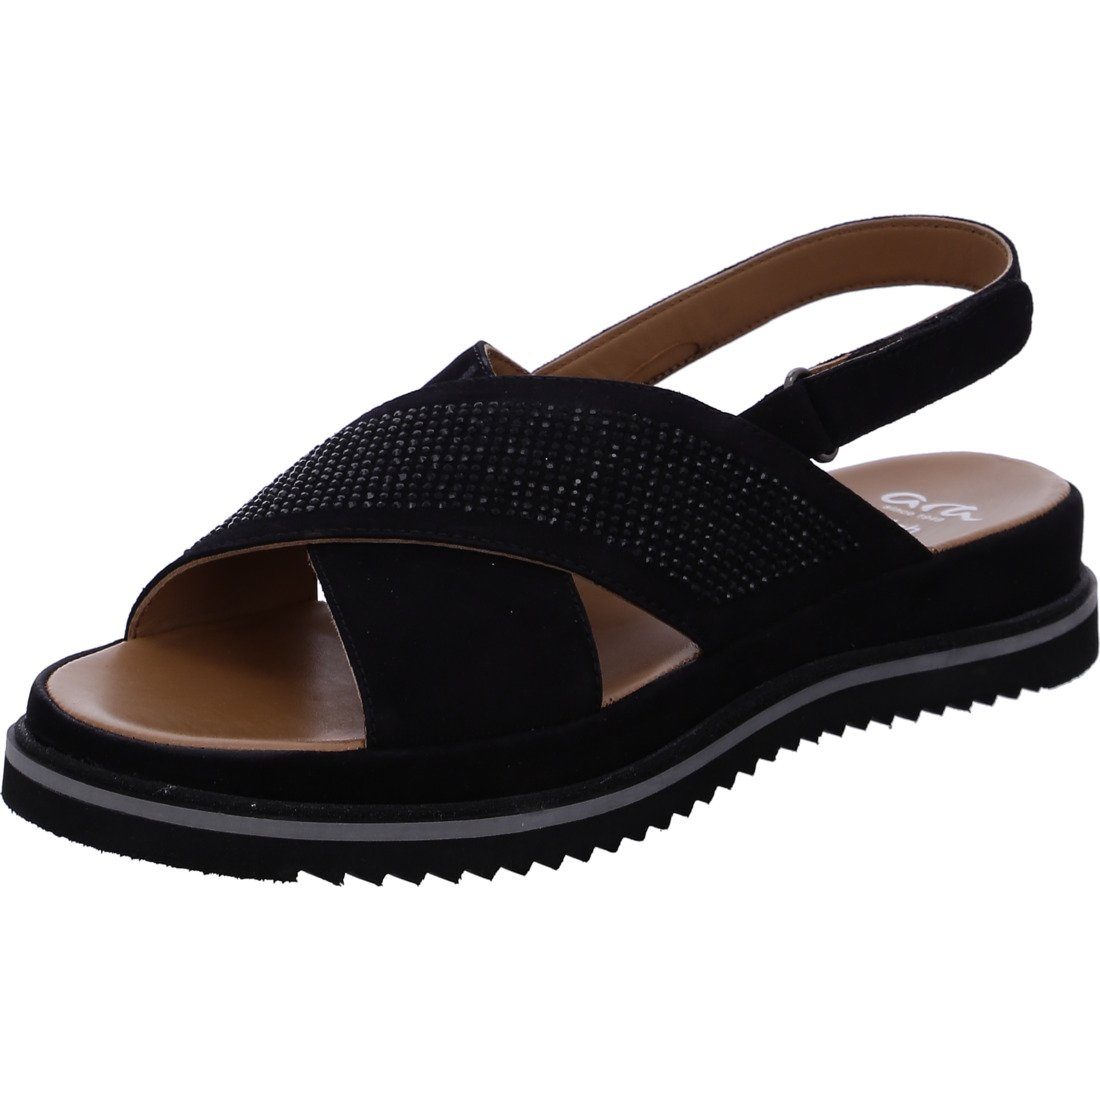 Ara Ara Schuhe, Sandalette Dubai - Rauleder Damen Sandalette schwarz 044853